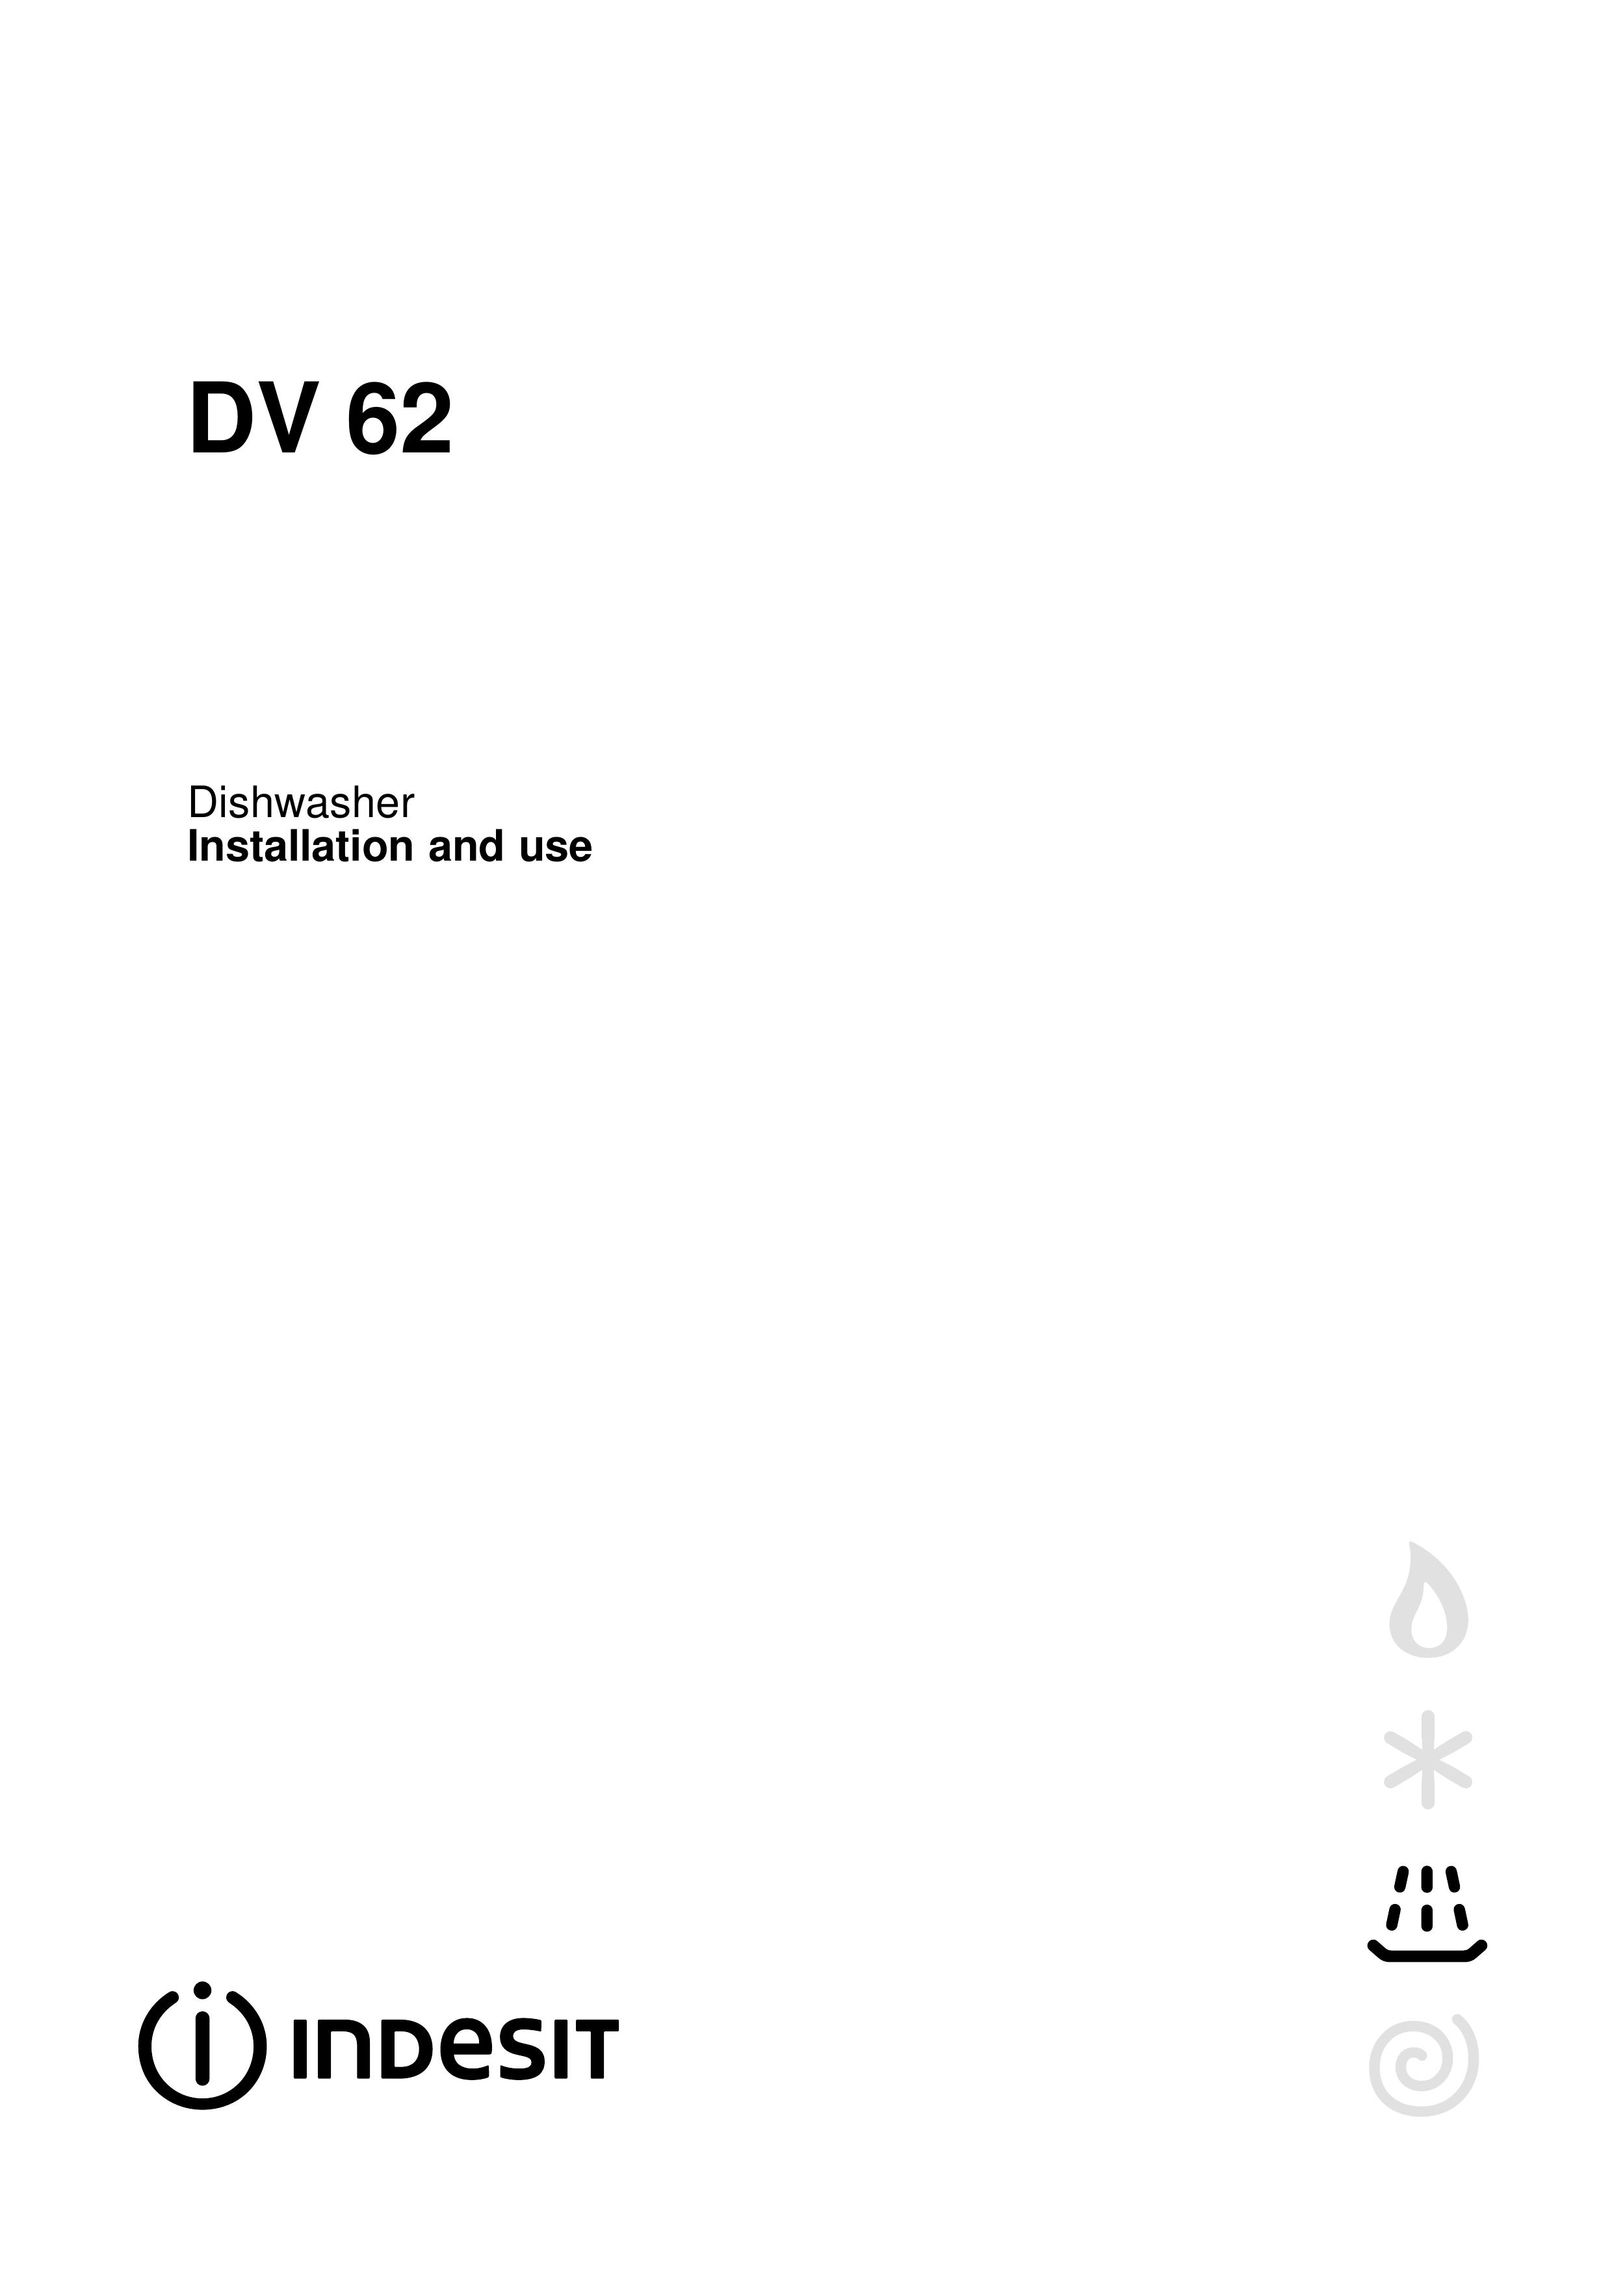 Indesit DV 62 Dishwasher User Manual